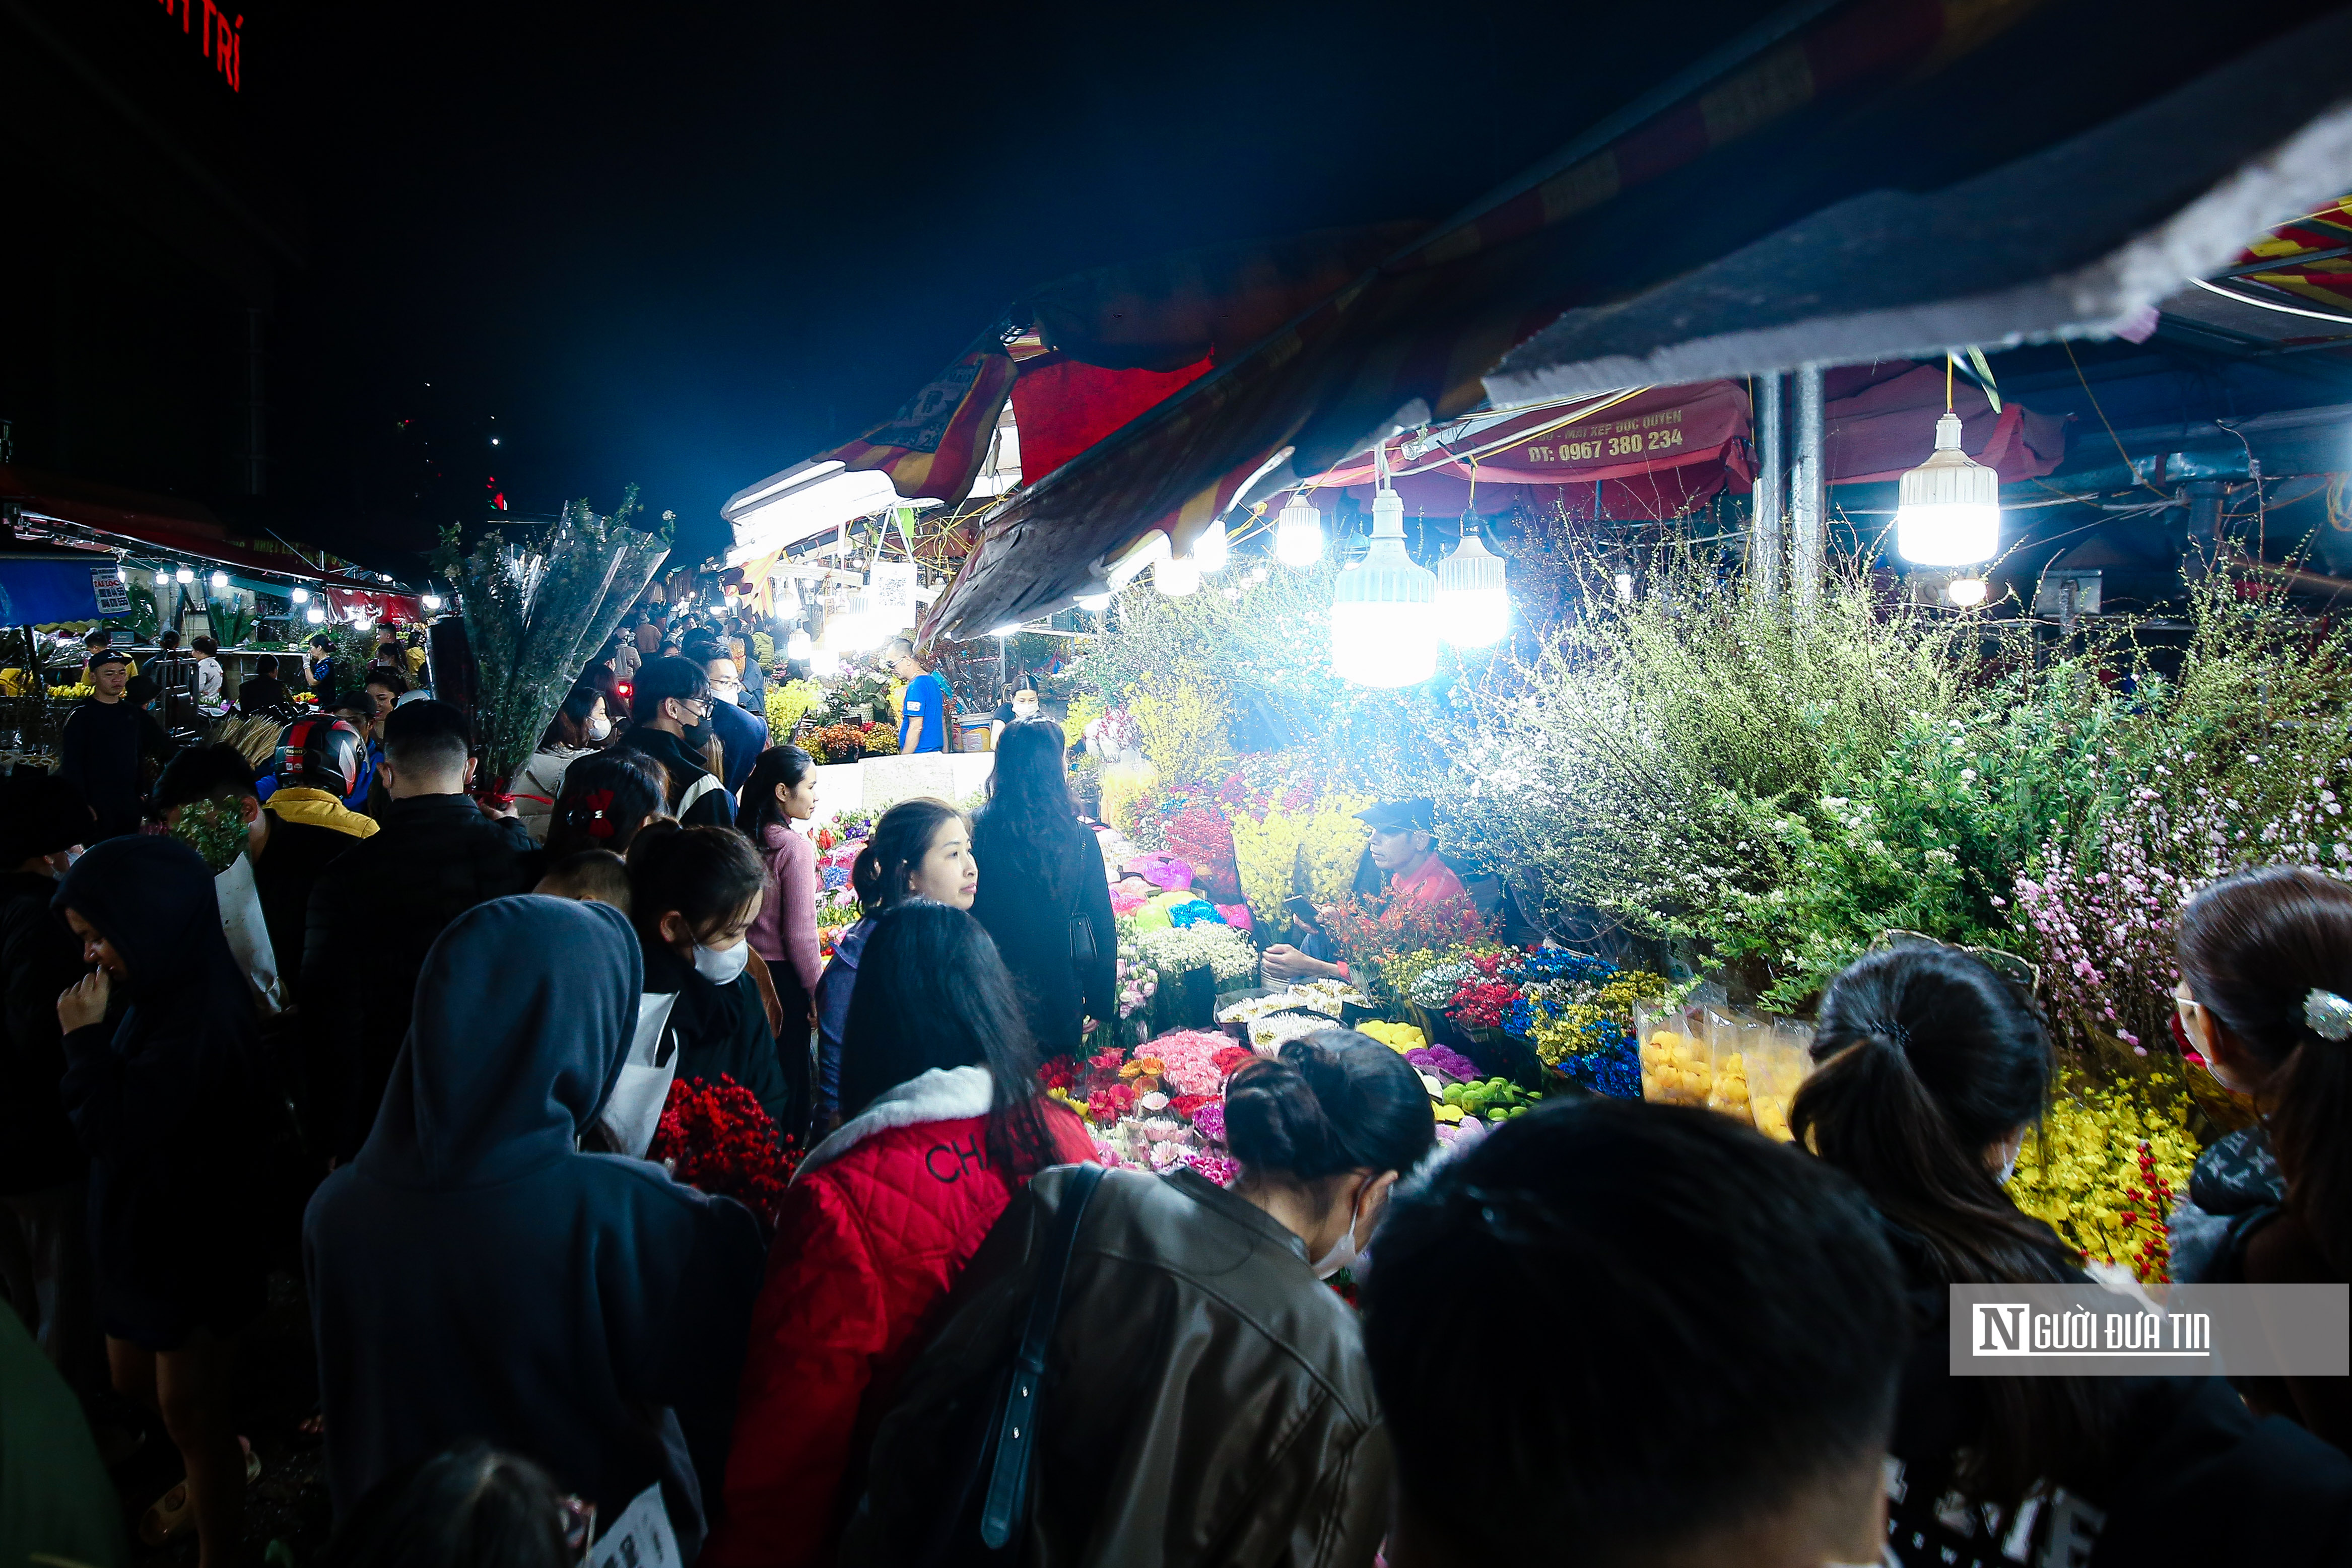 Dân sinh - Khung cảnh tấp nập tại chợ hoa Quảng An ngày cận Tết (Hình 7).